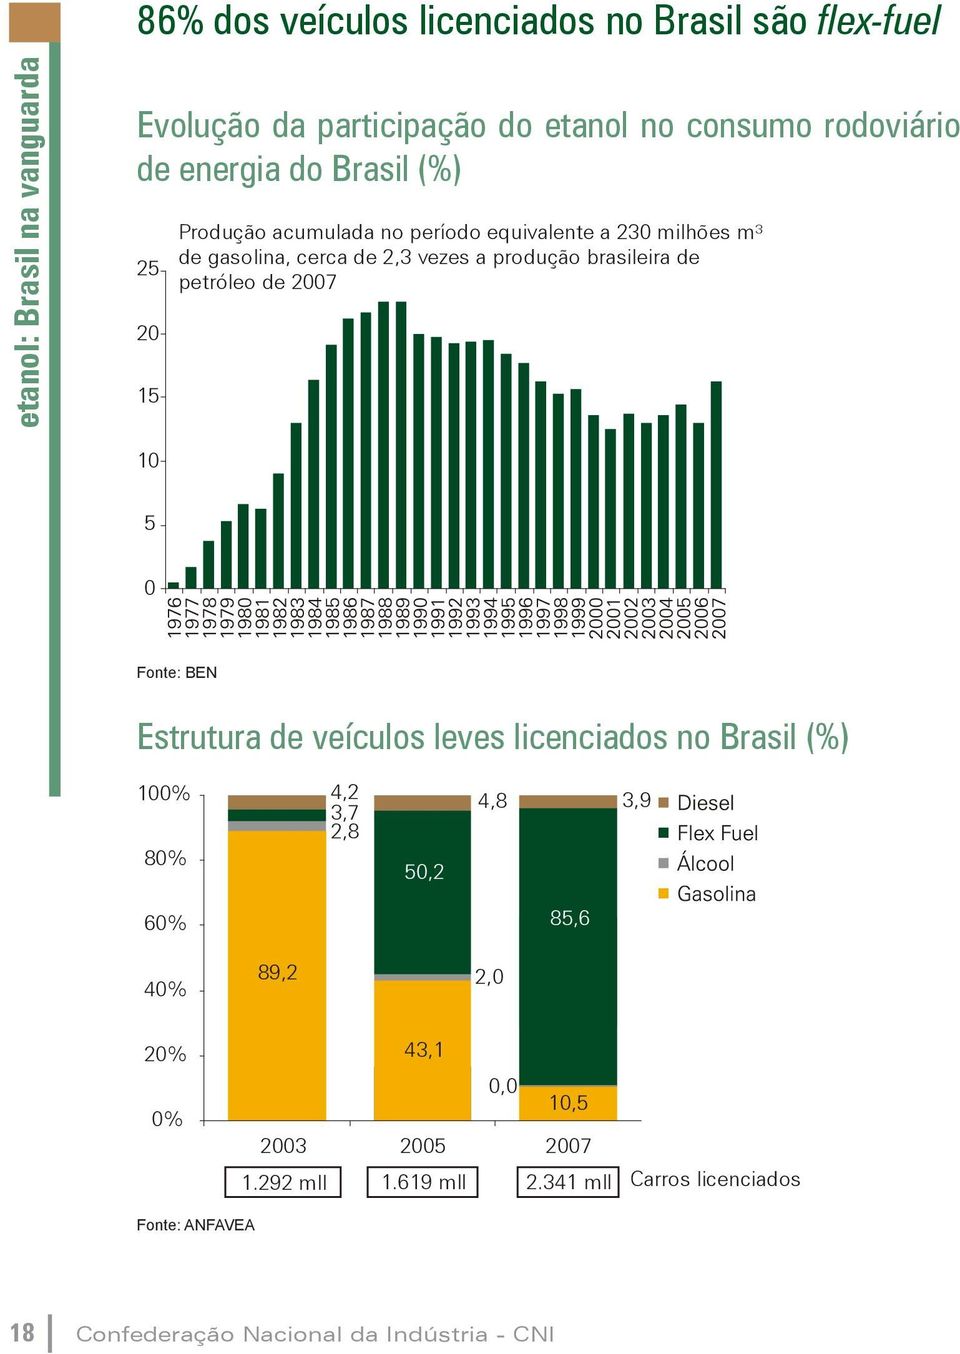 10 5 0 Fonte: BEN Estrutura de veículos leves licenciados no Brasil (%) 100% 80% 4,2 3,7 2,8 33,4 50,2 4,8 3,9 60% 40% 20% 0% 85,6 13,3 89,2 2,0 34,2